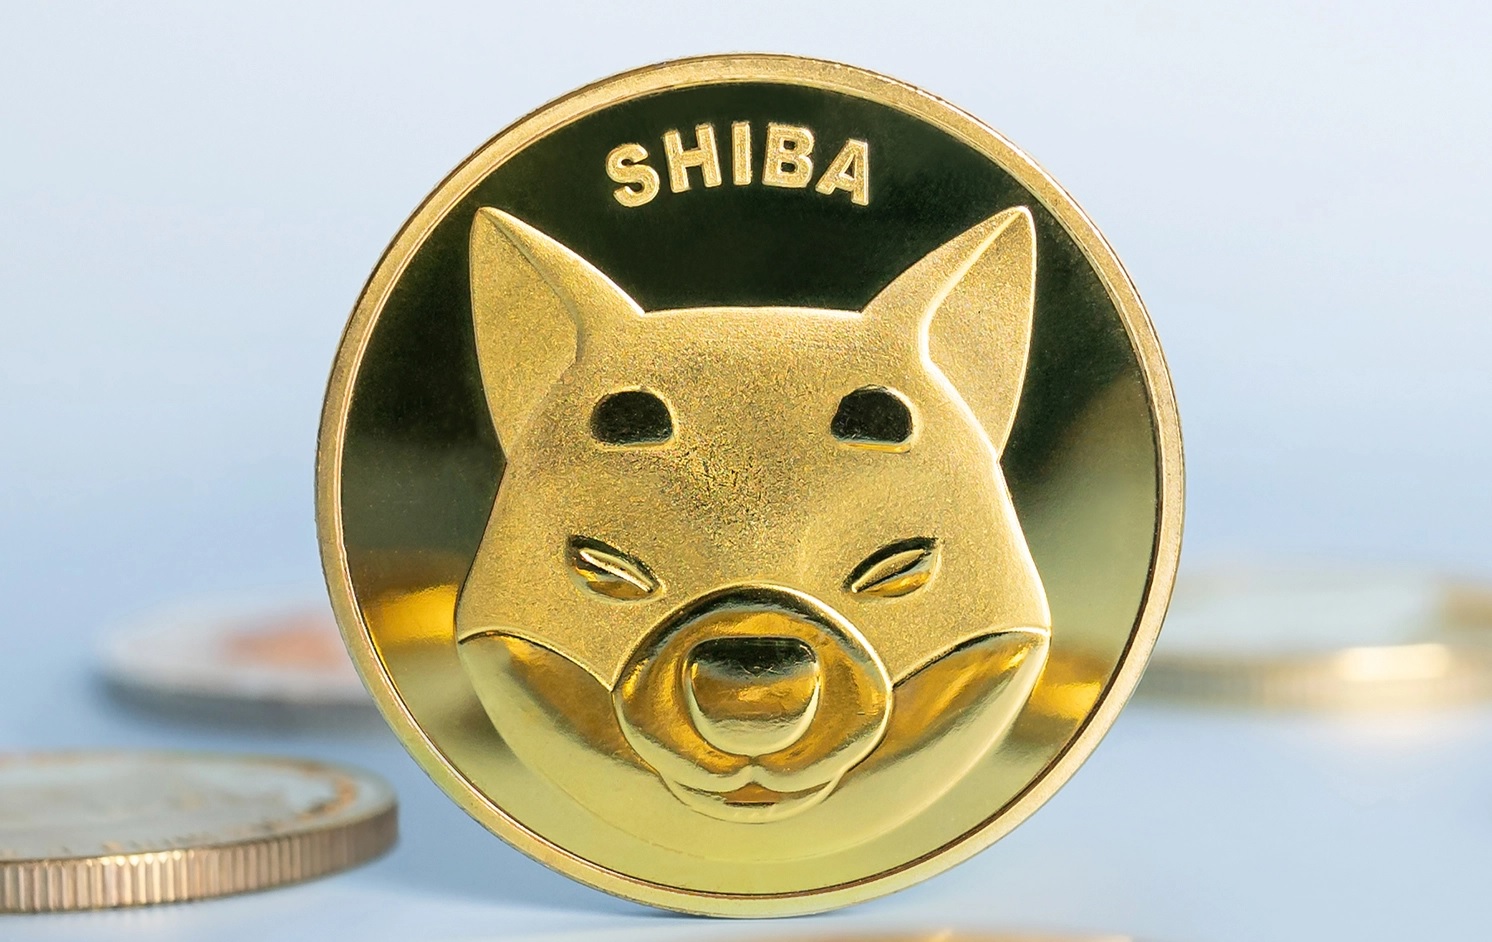  shiba market opens gains crypto shib leads 